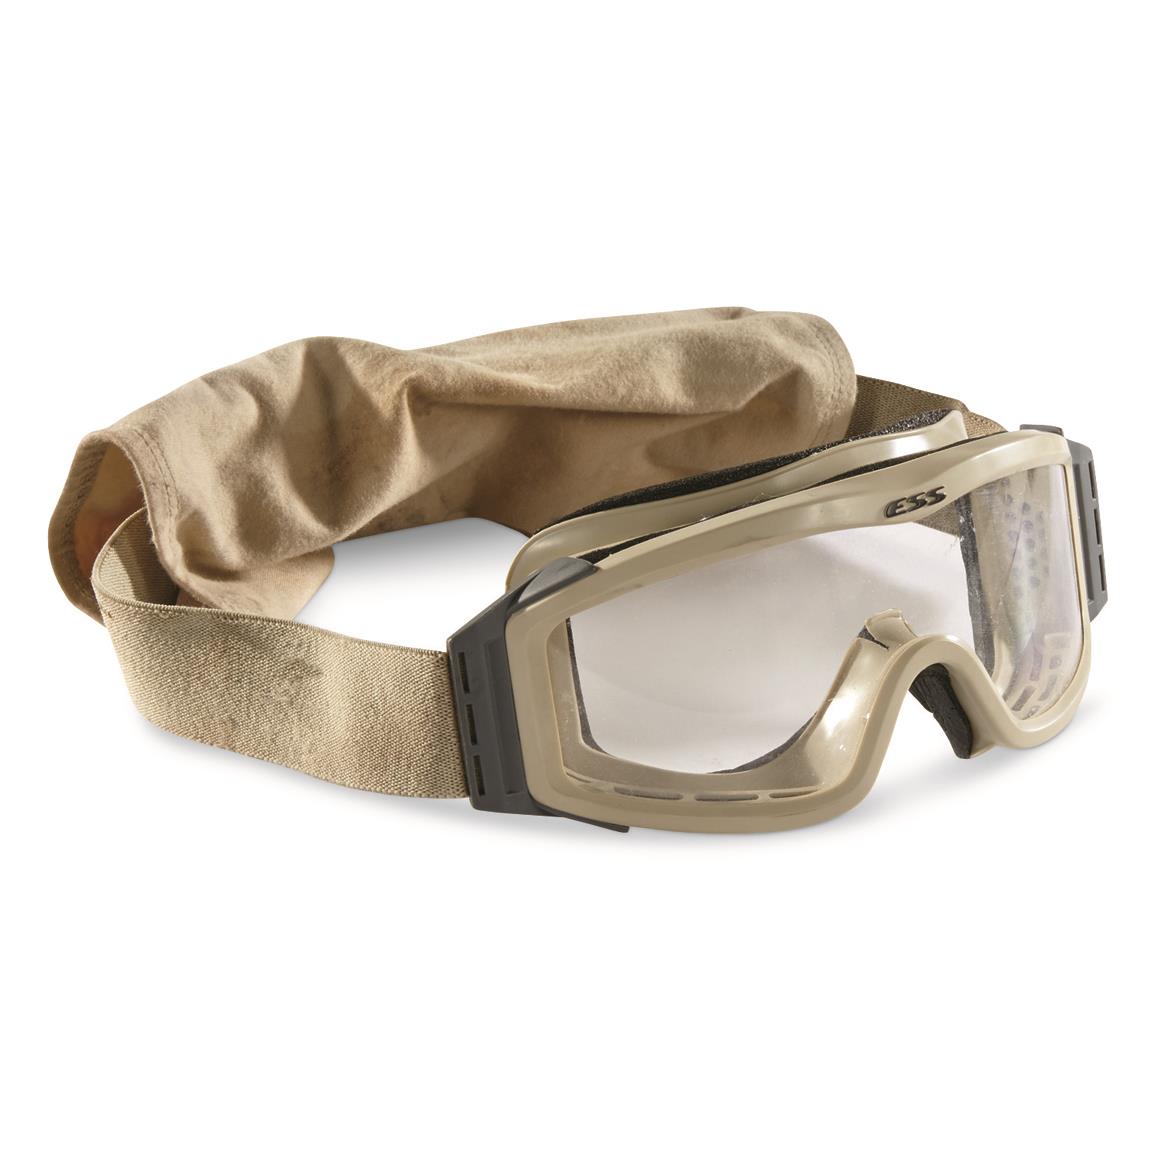 U.S. Military Surplus ESS Goggles, Used, Sand